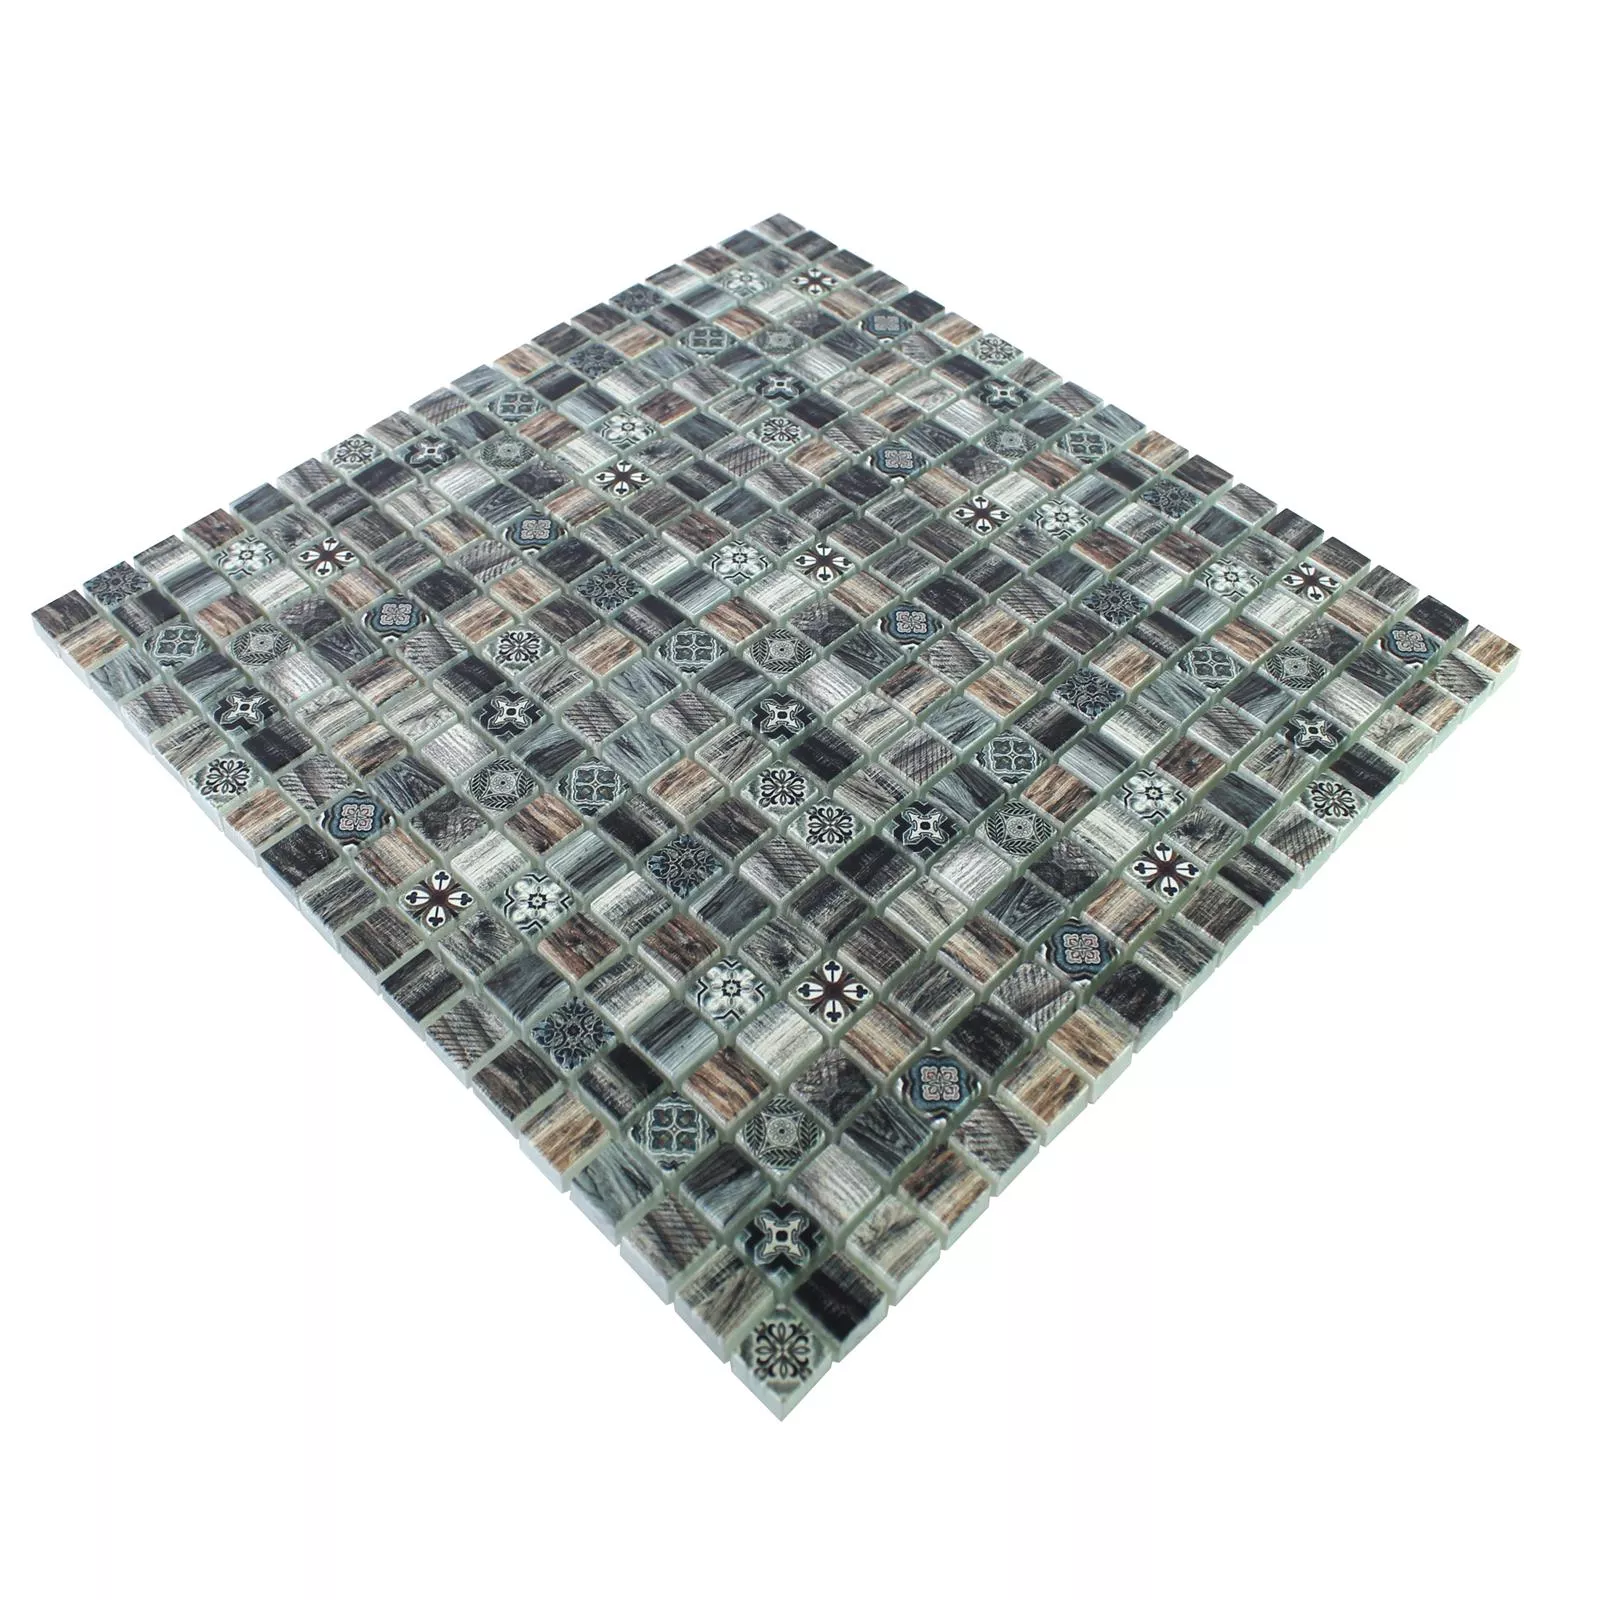 Glass Mosaic Wood Optic Tiles Vision Dark Brown